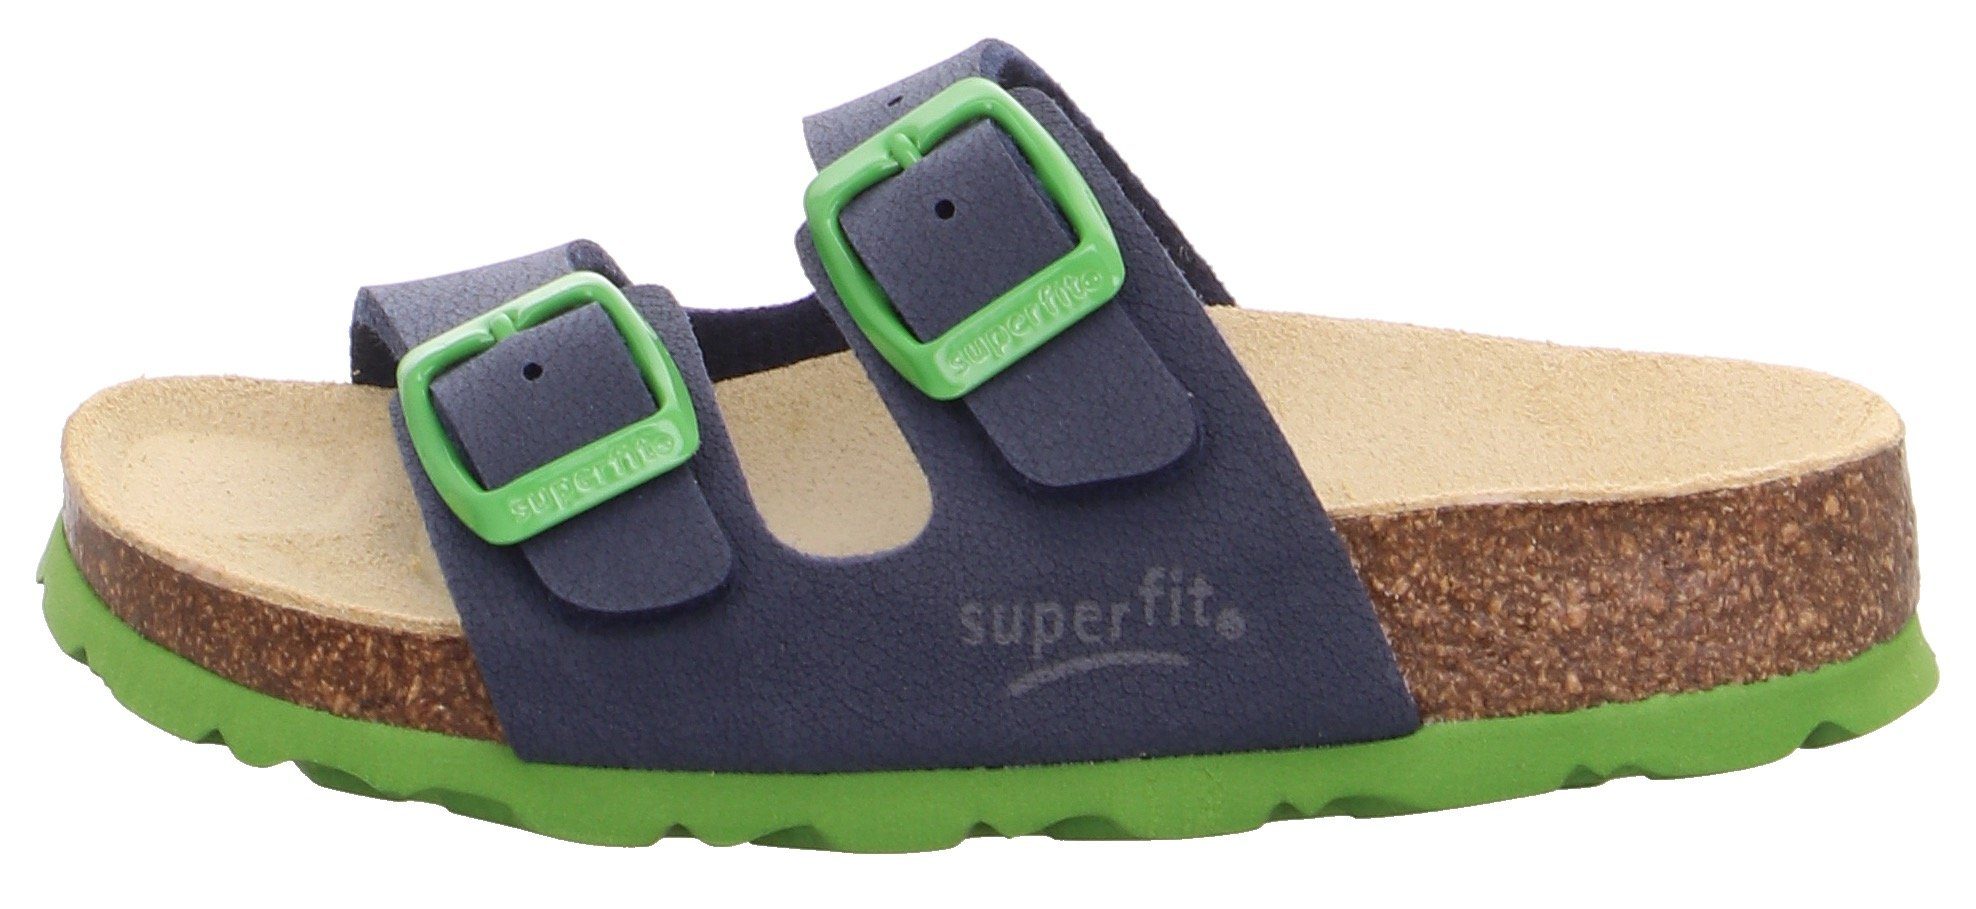 Schnallen zum Fußbettpantolette blau-grün mit WMS: Pantolette Superfit verstellen Mittel